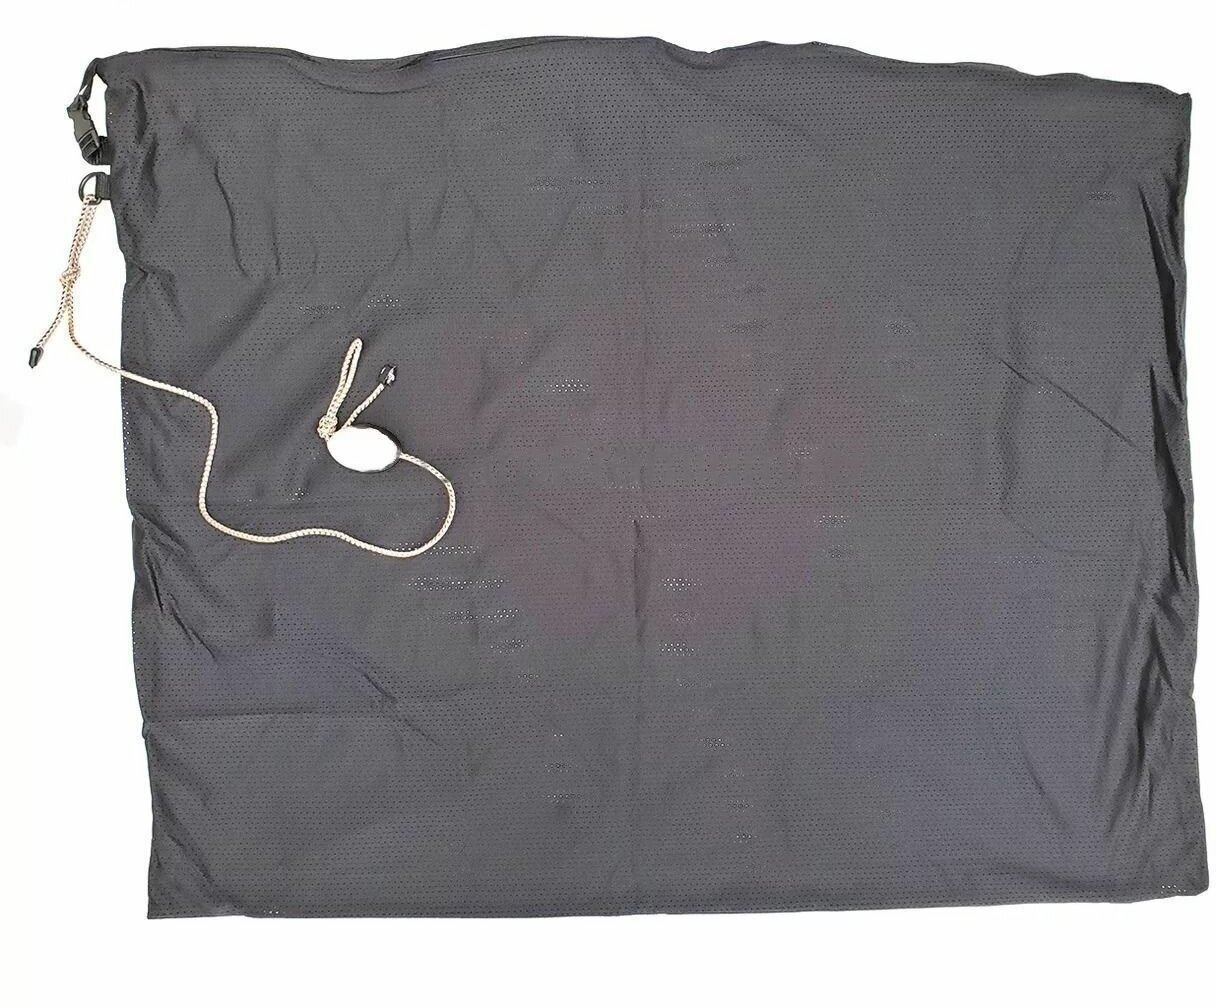 Карповый мешок для рыбы 100 х 75 см на молнии с поплавком Carp Bag - Black Zipper 1 шт